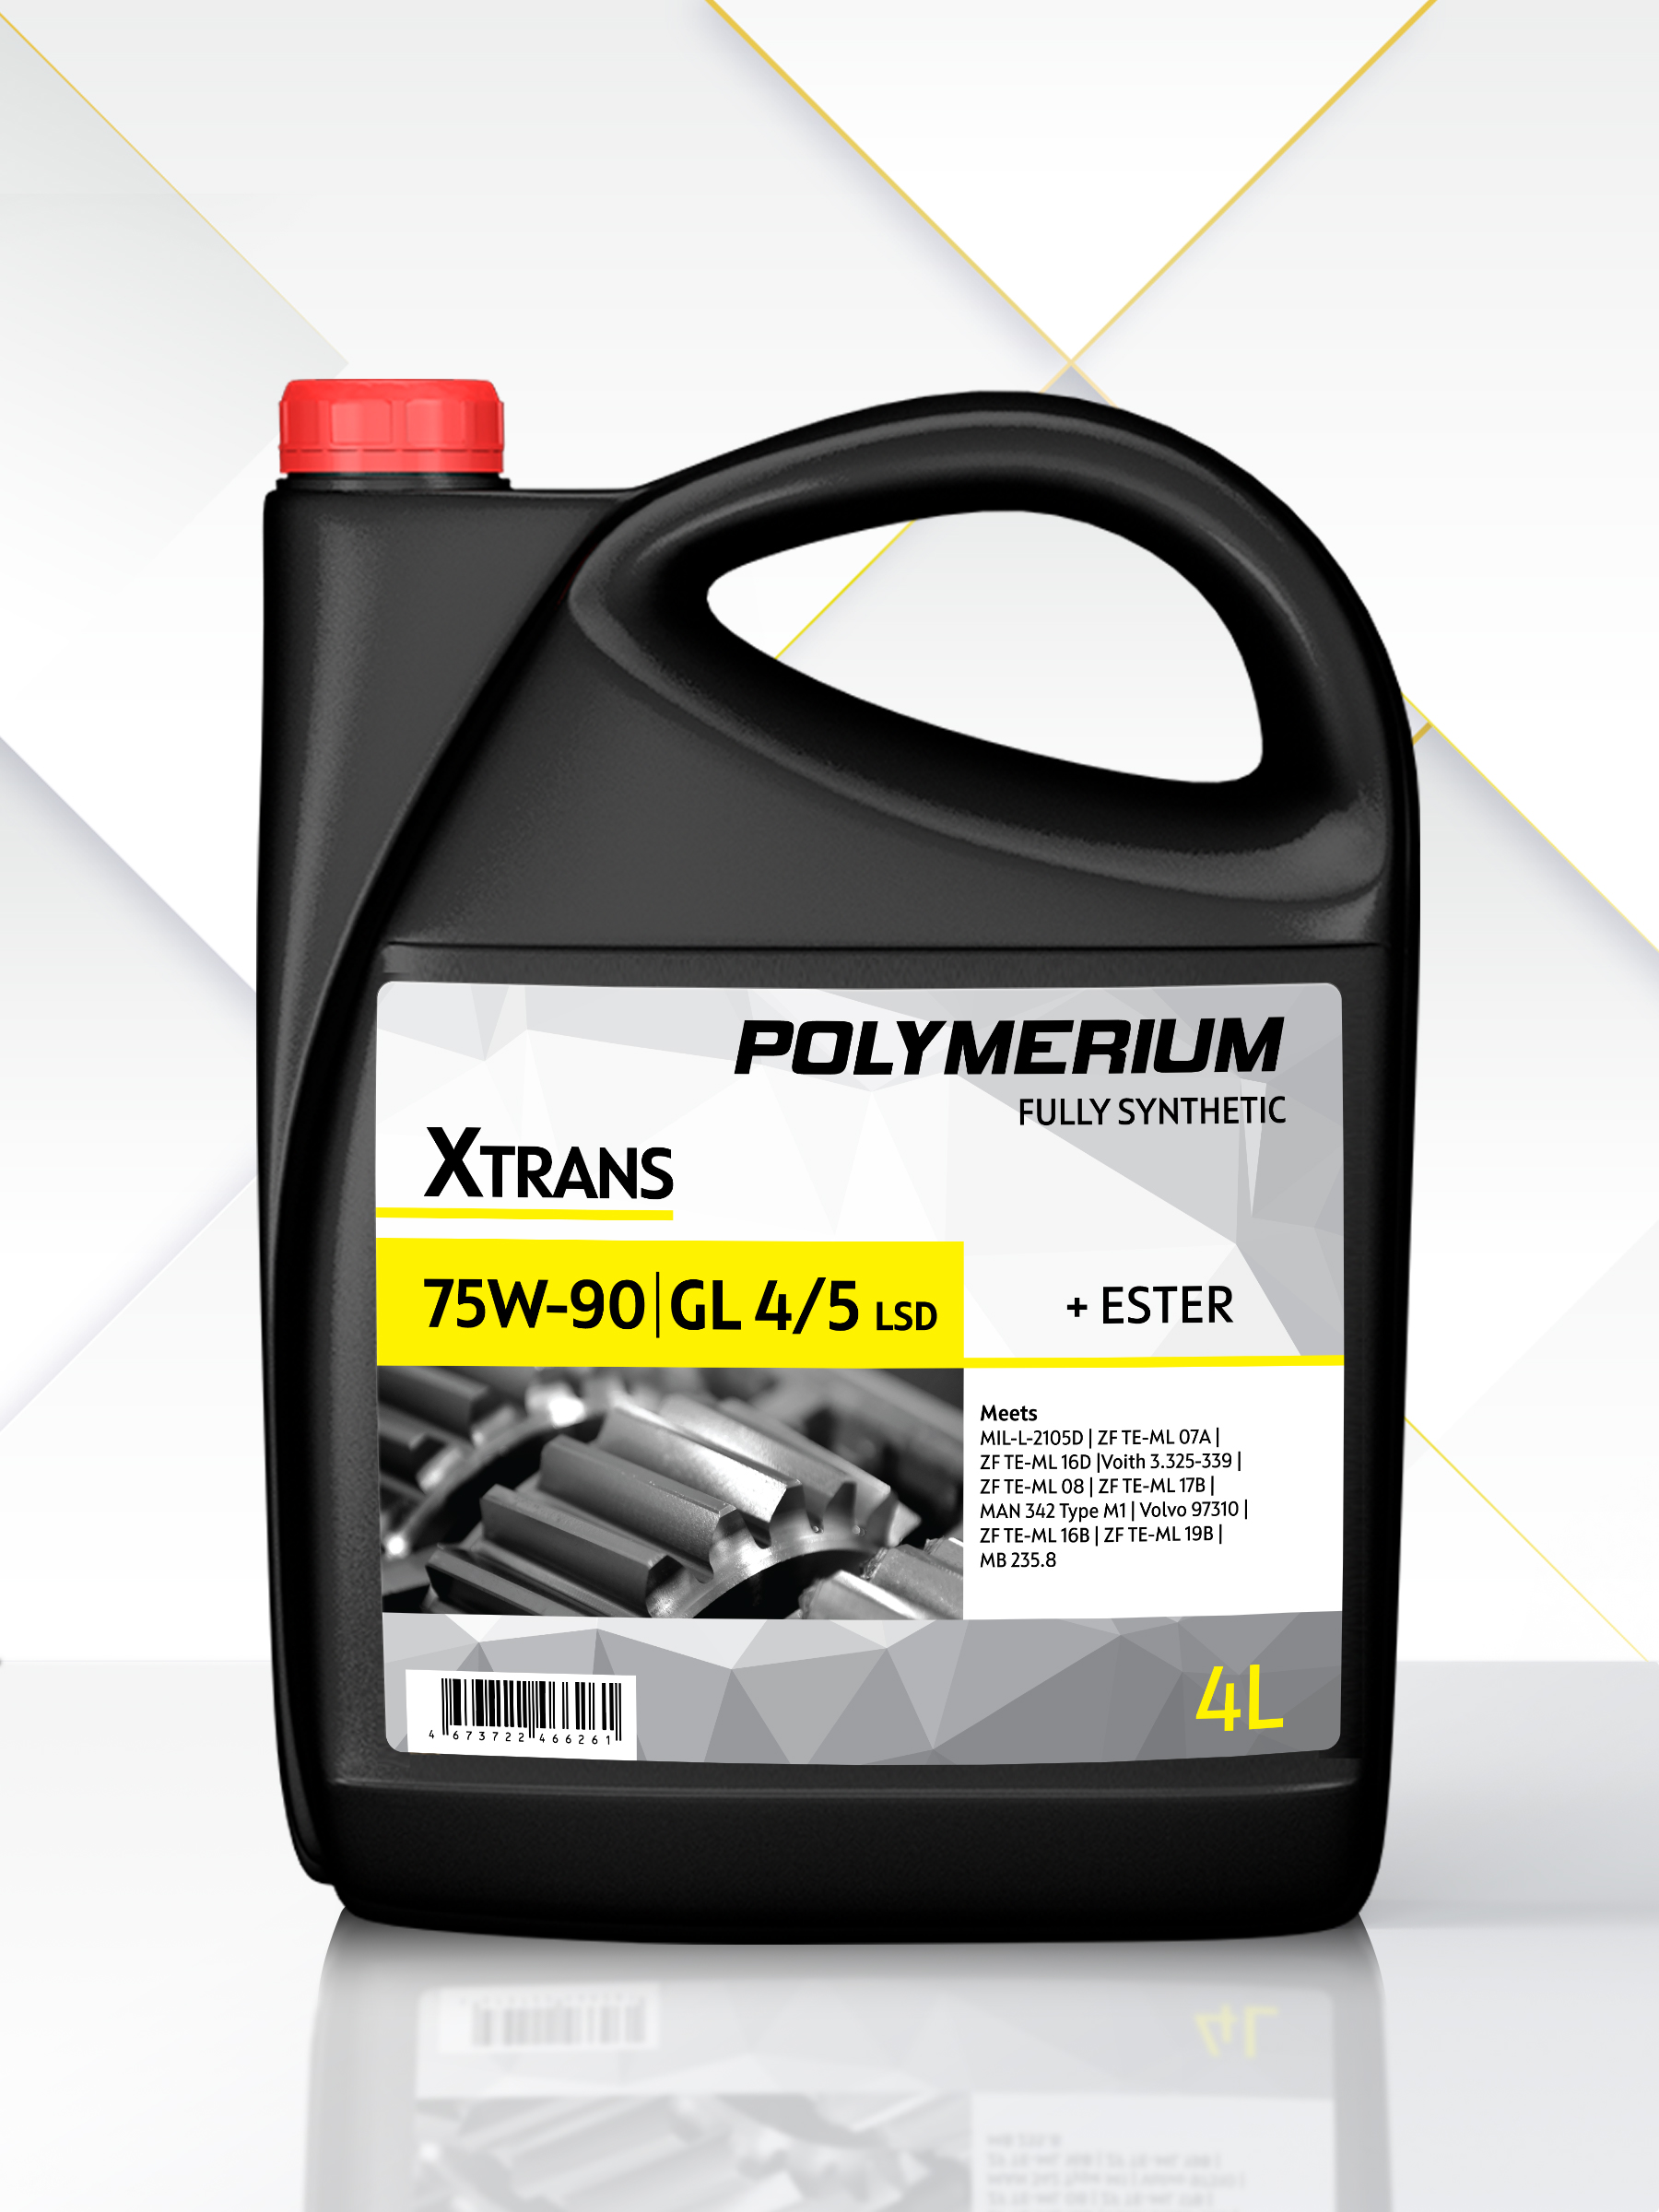 Cинтетическое трансмиссионное масло Polymerium Xtrans 75W-90 GL 4/5 Fully synthetic 4 л